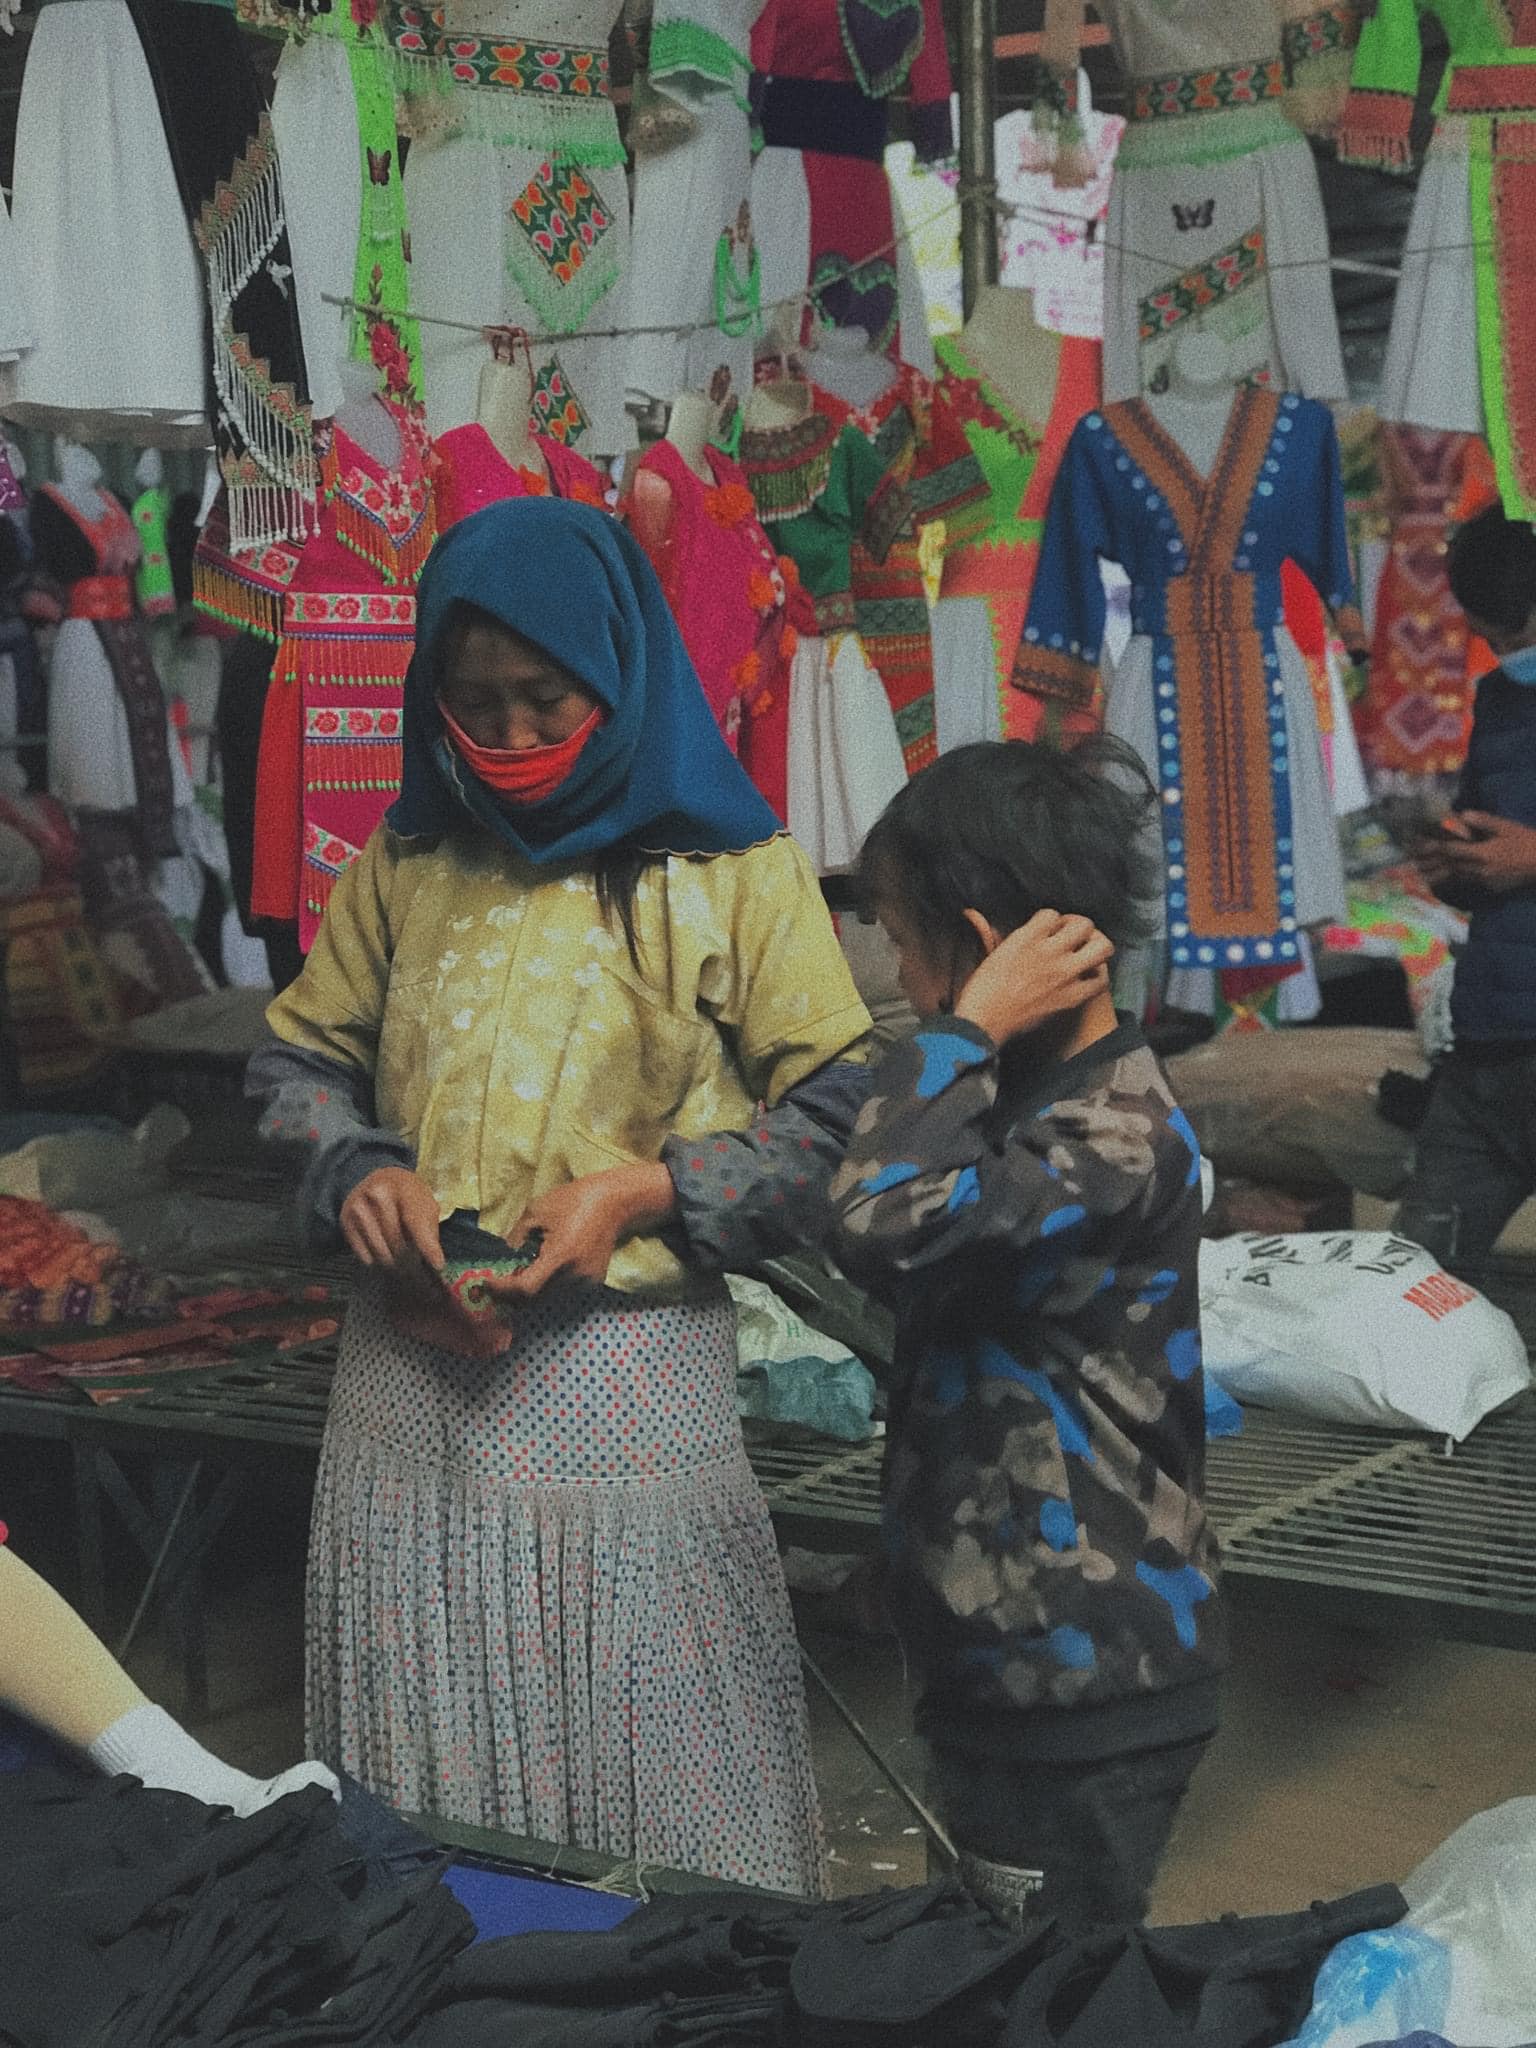 Hay đi chợ cổ Đồng Văn để tìm hiểu về nét sinh hoạt văn hoá truyền thống đặc trưng của người dân địa phương